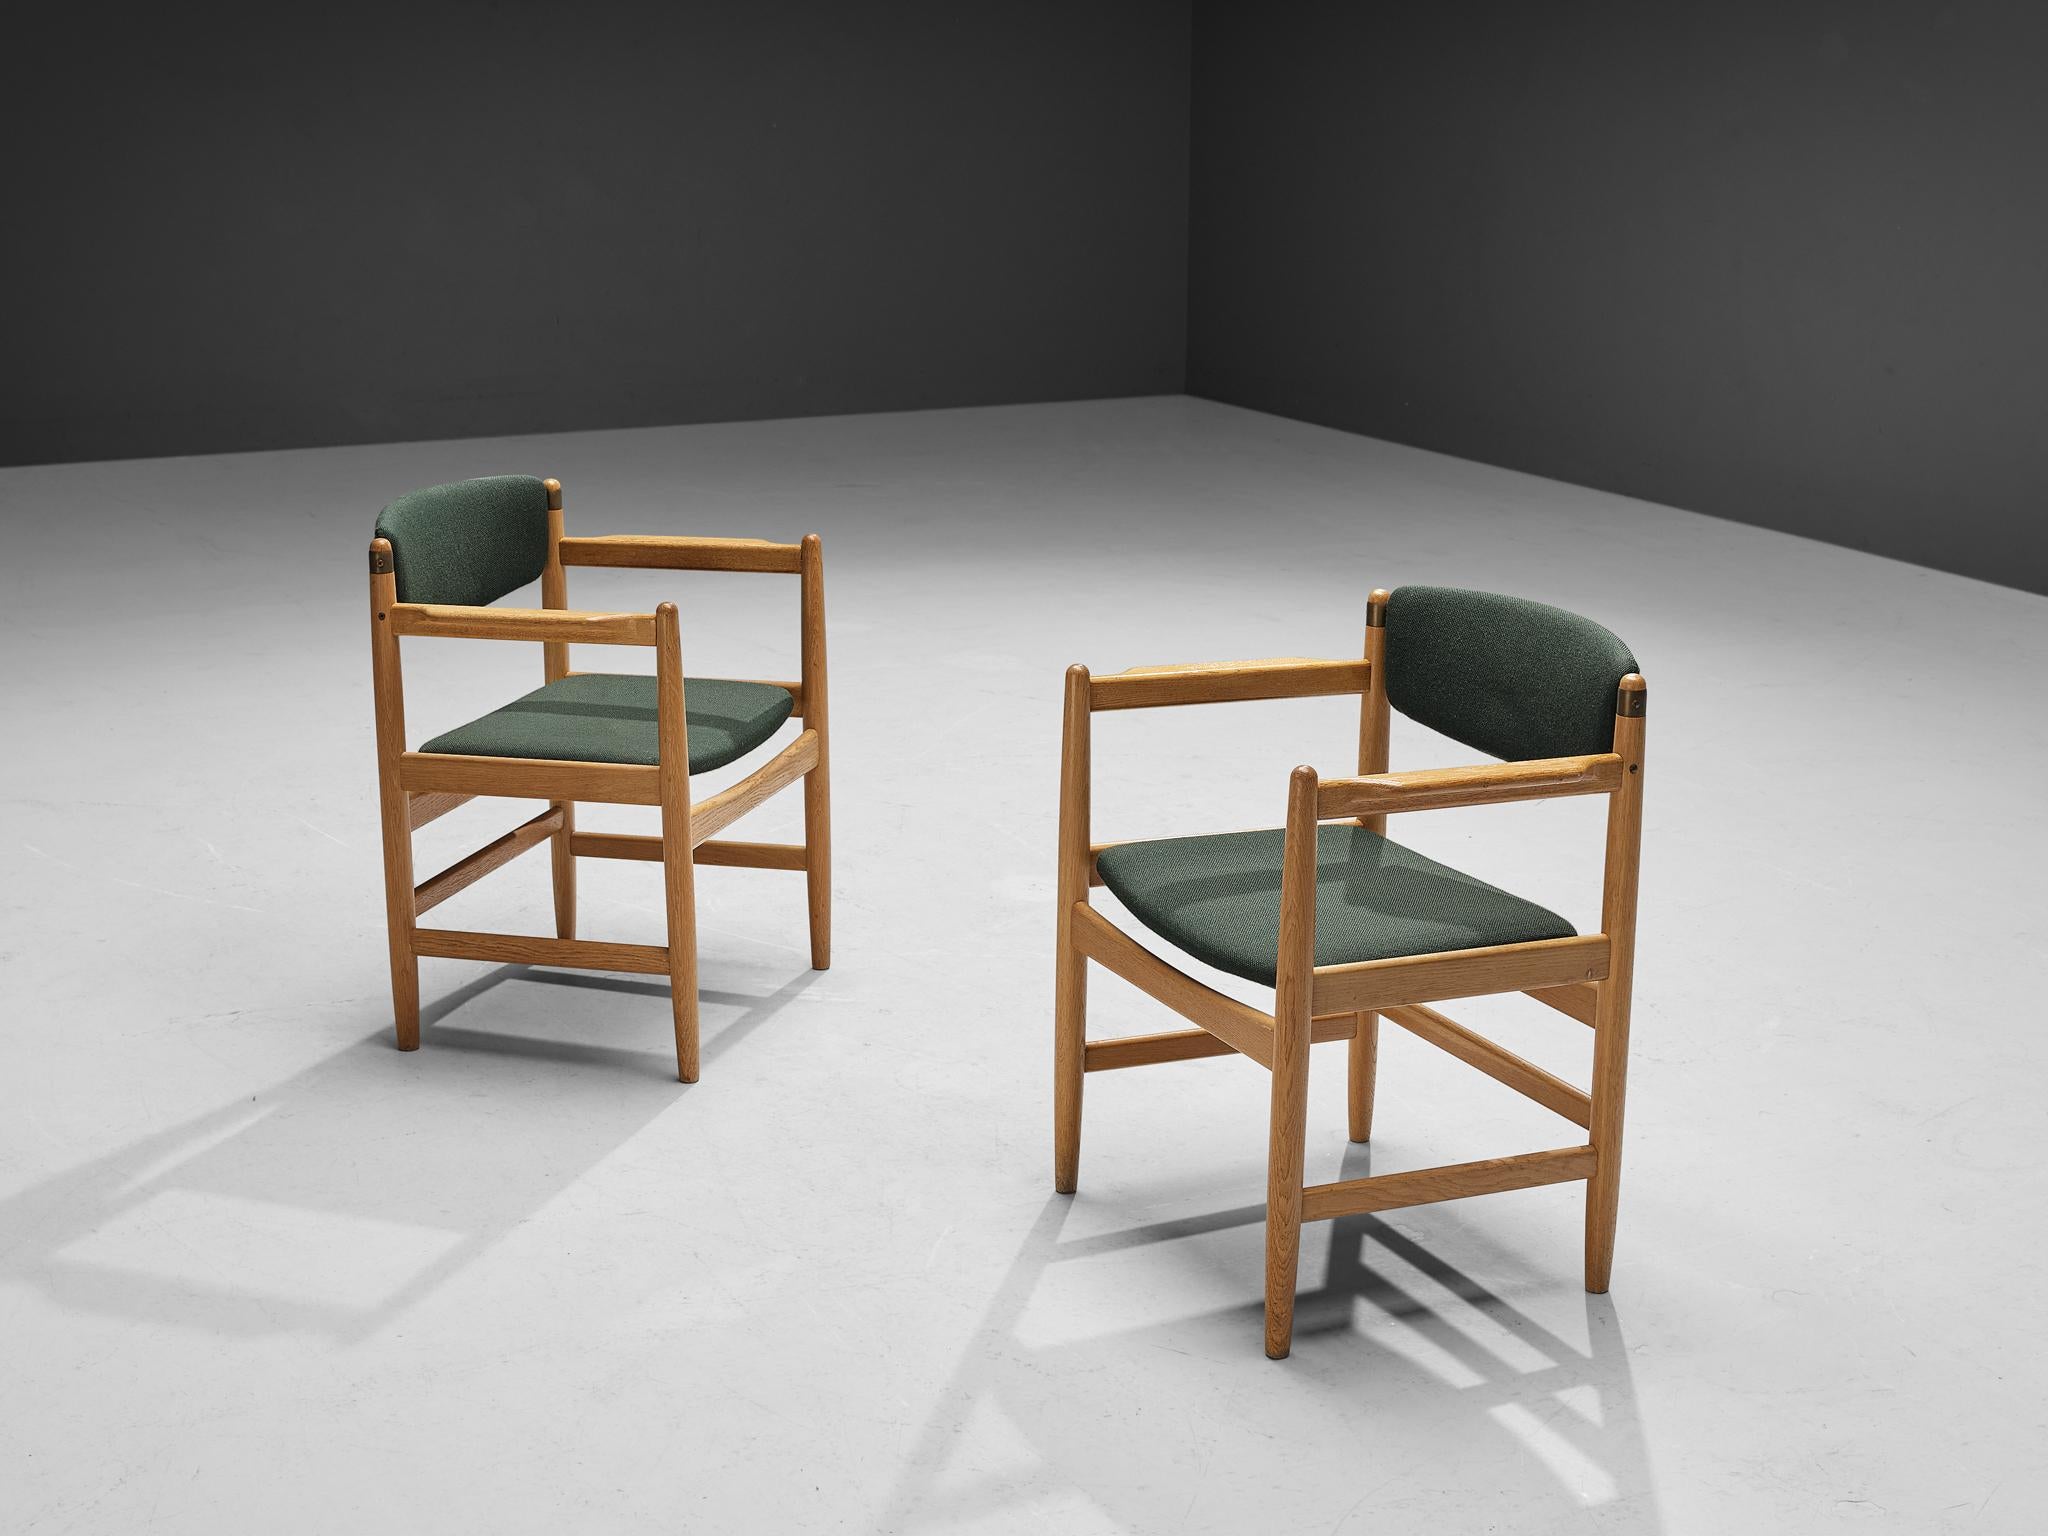 Paire de fauteuils, tissu, chêne, laiton, Danemark, années 1960

Cette paire de fauteuils danois bien exécutés témoigne d'un niveau d'artisanat exquis. La chaise présente un cadre sculpté typique du design Modern Scandinavian du milieu du siècle. La